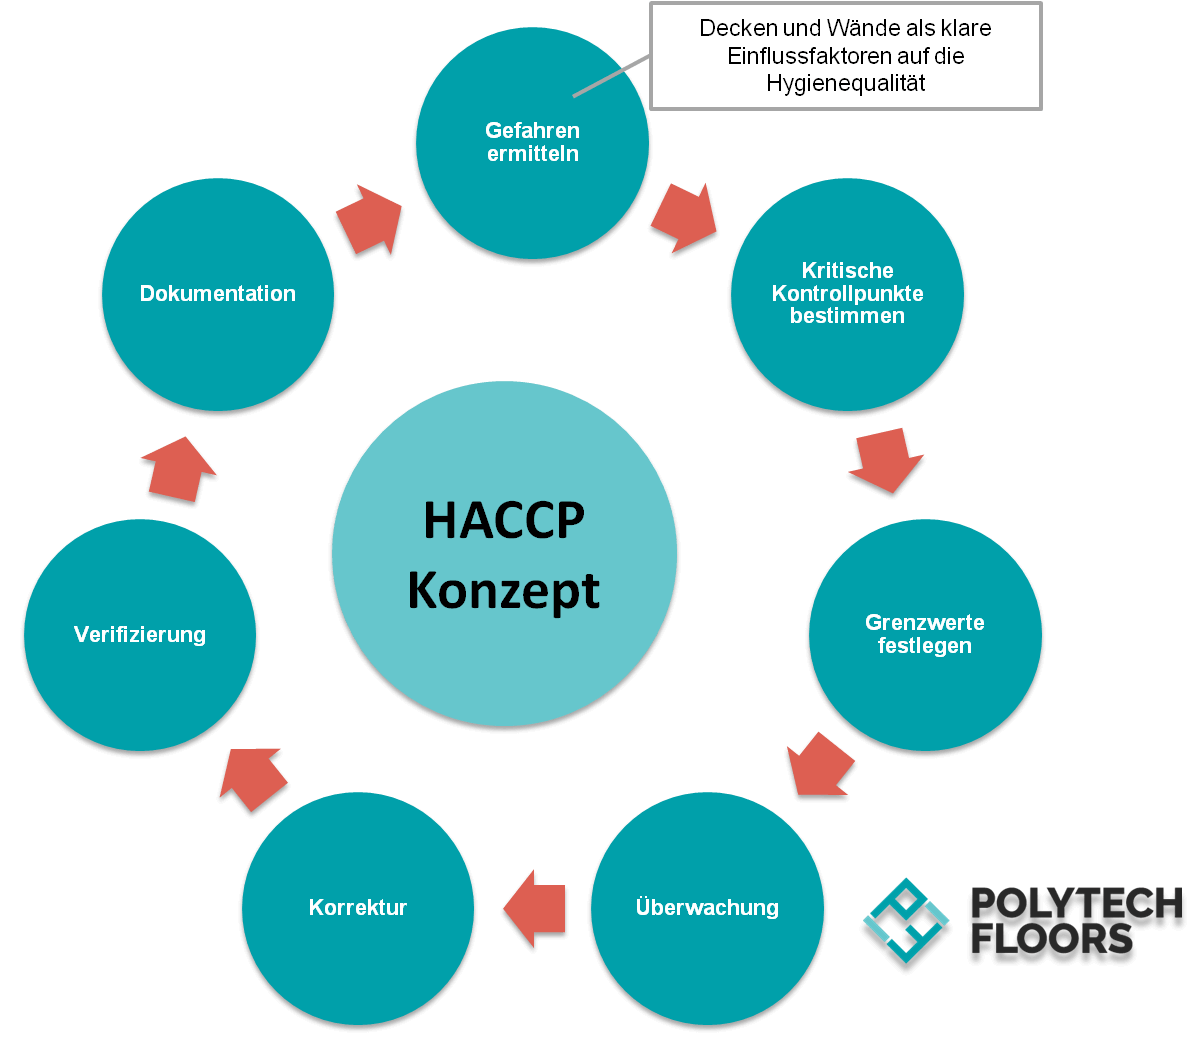 Darstellung des HACCP Konzepts mit Fokus auf hygienische Decken- & Wandsysteme als EInflussfaktor auf die Hygienequalität